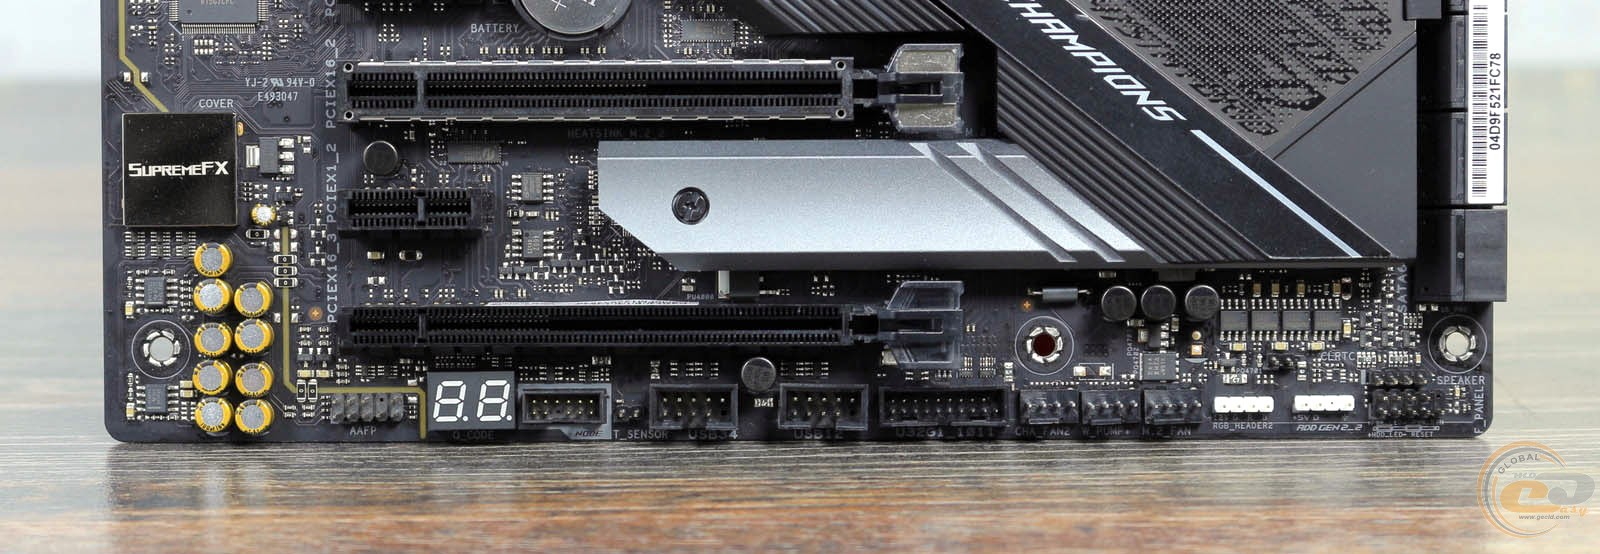 Asus x570 e gaming. X570 ROG Strix. ROG Strix x 570 e. Системная плата ASUS Prime x570-p (3 PCI-E x1, 2 PCI-E x16, 2 m.2, 4 ddr4 DIMM, Audio, Video, Gigabit lan).